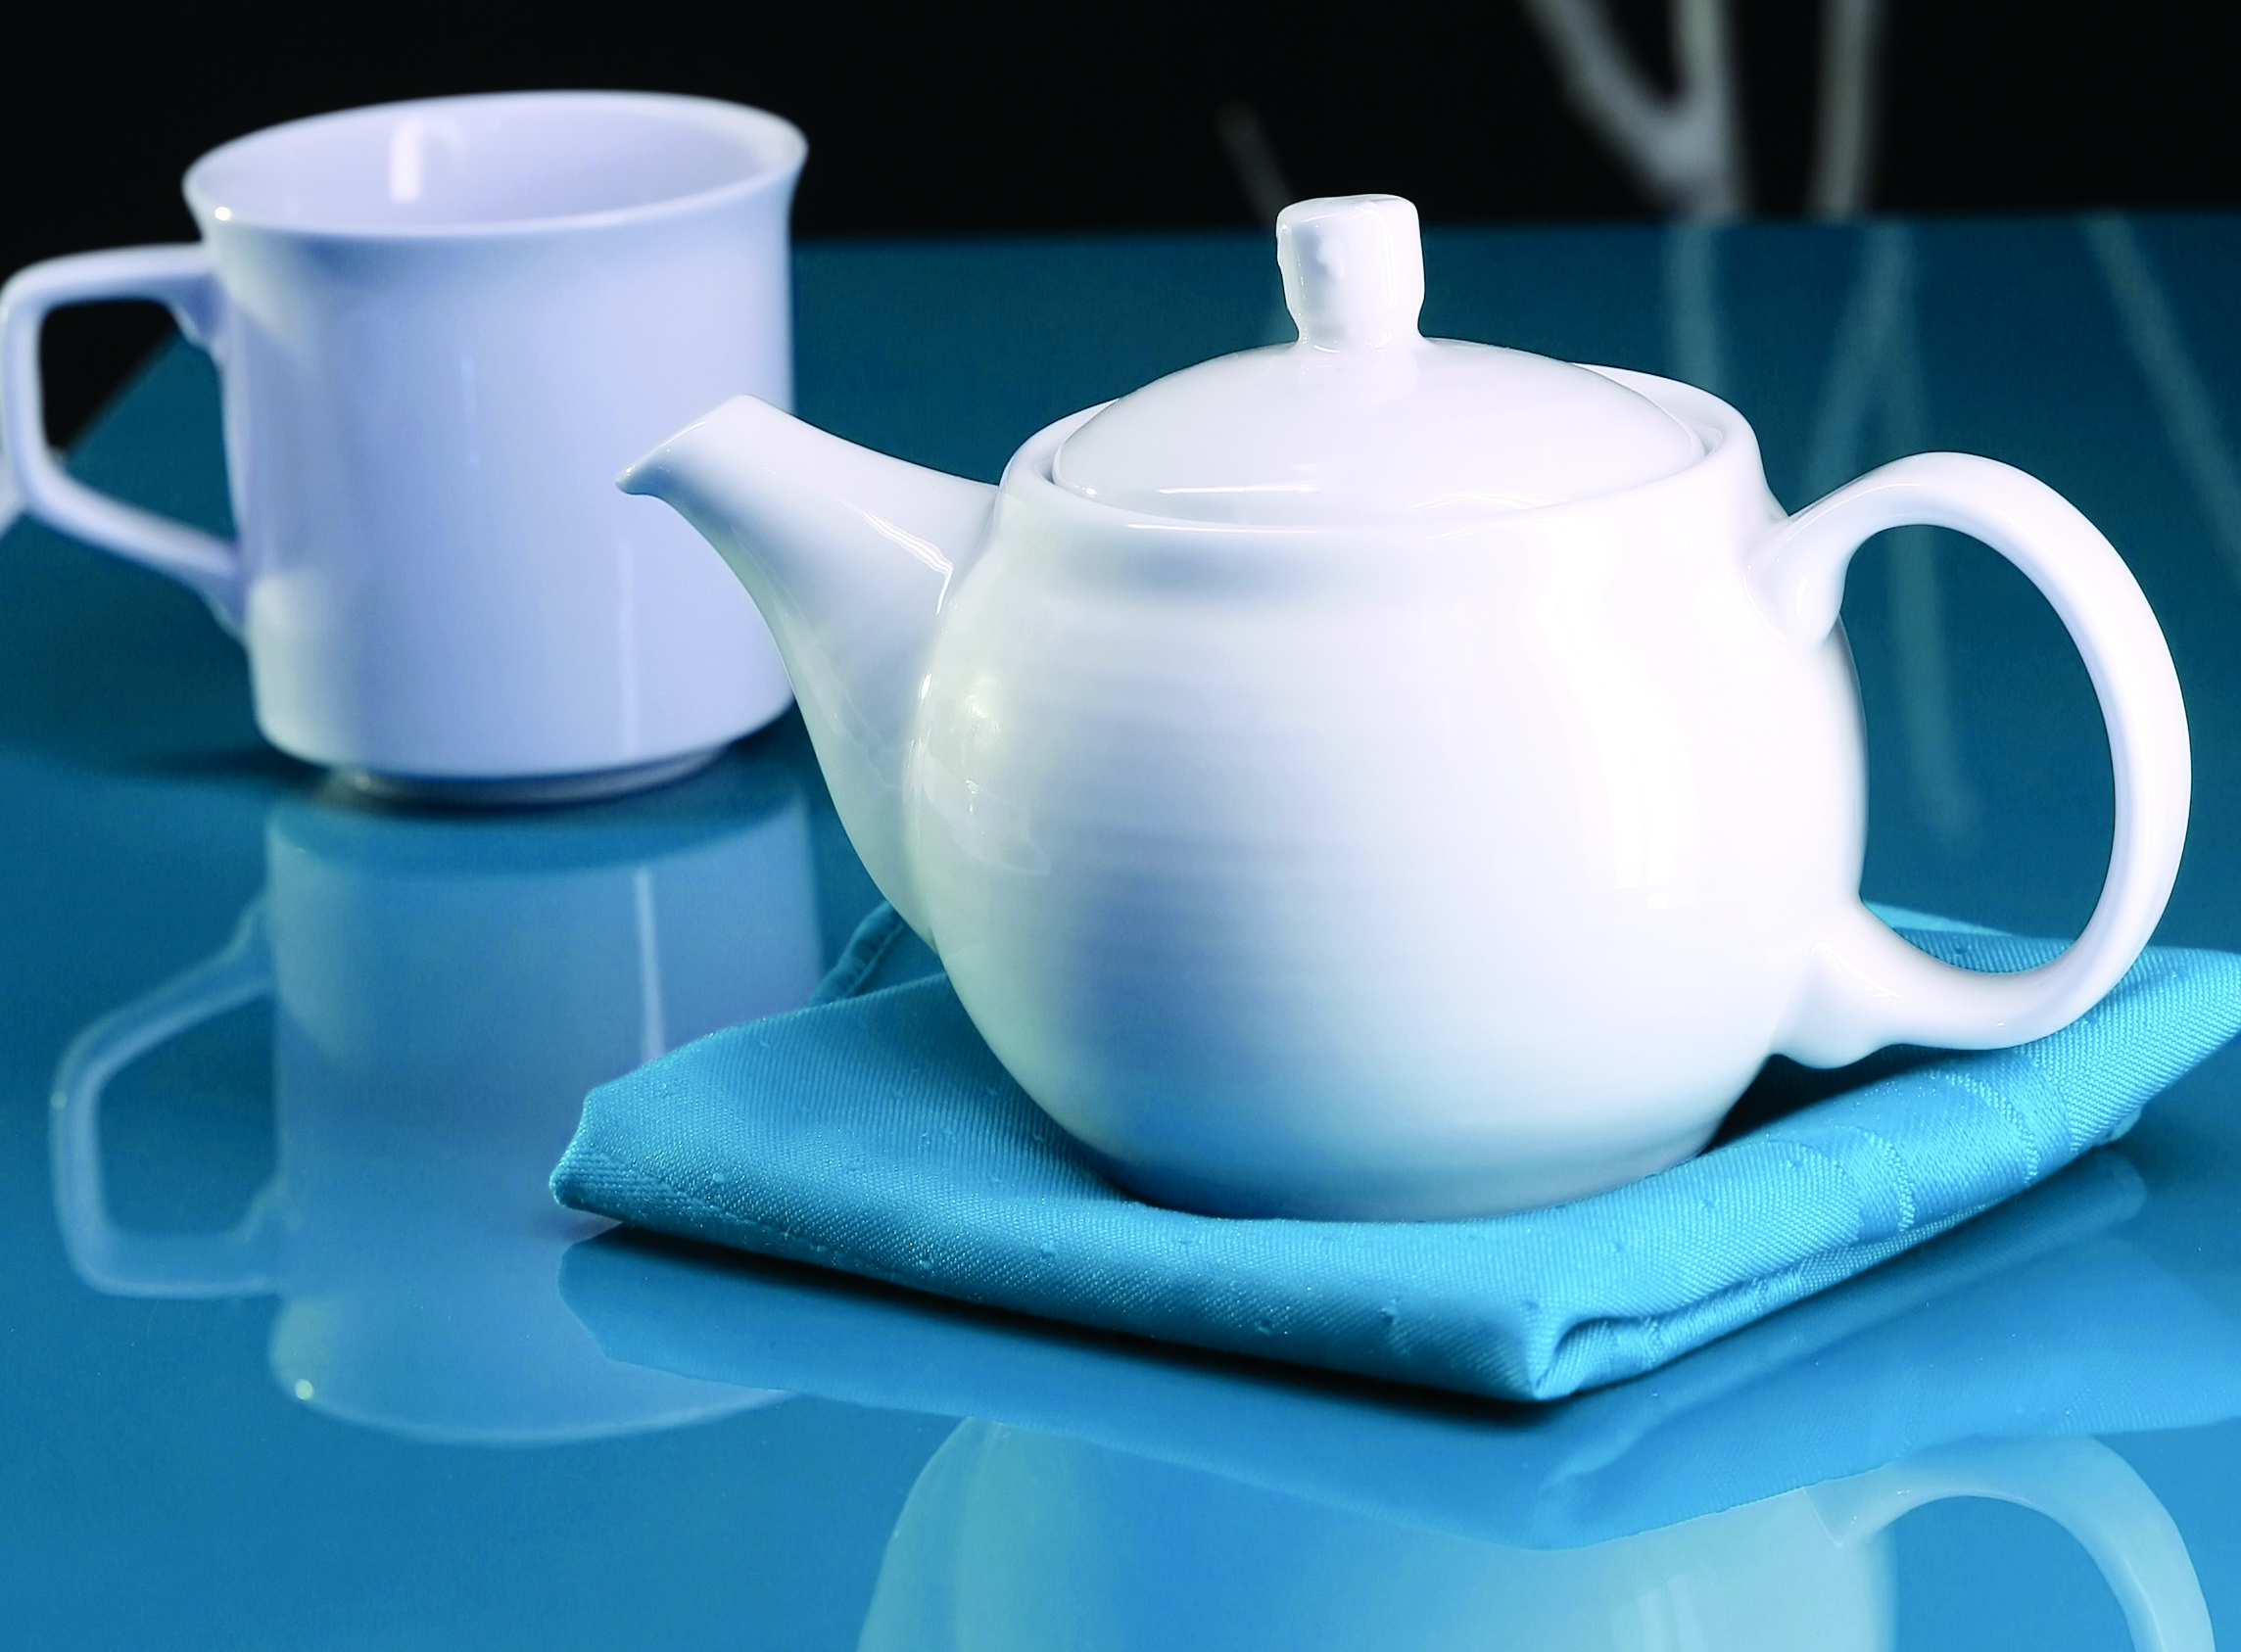 Tea pot and cup